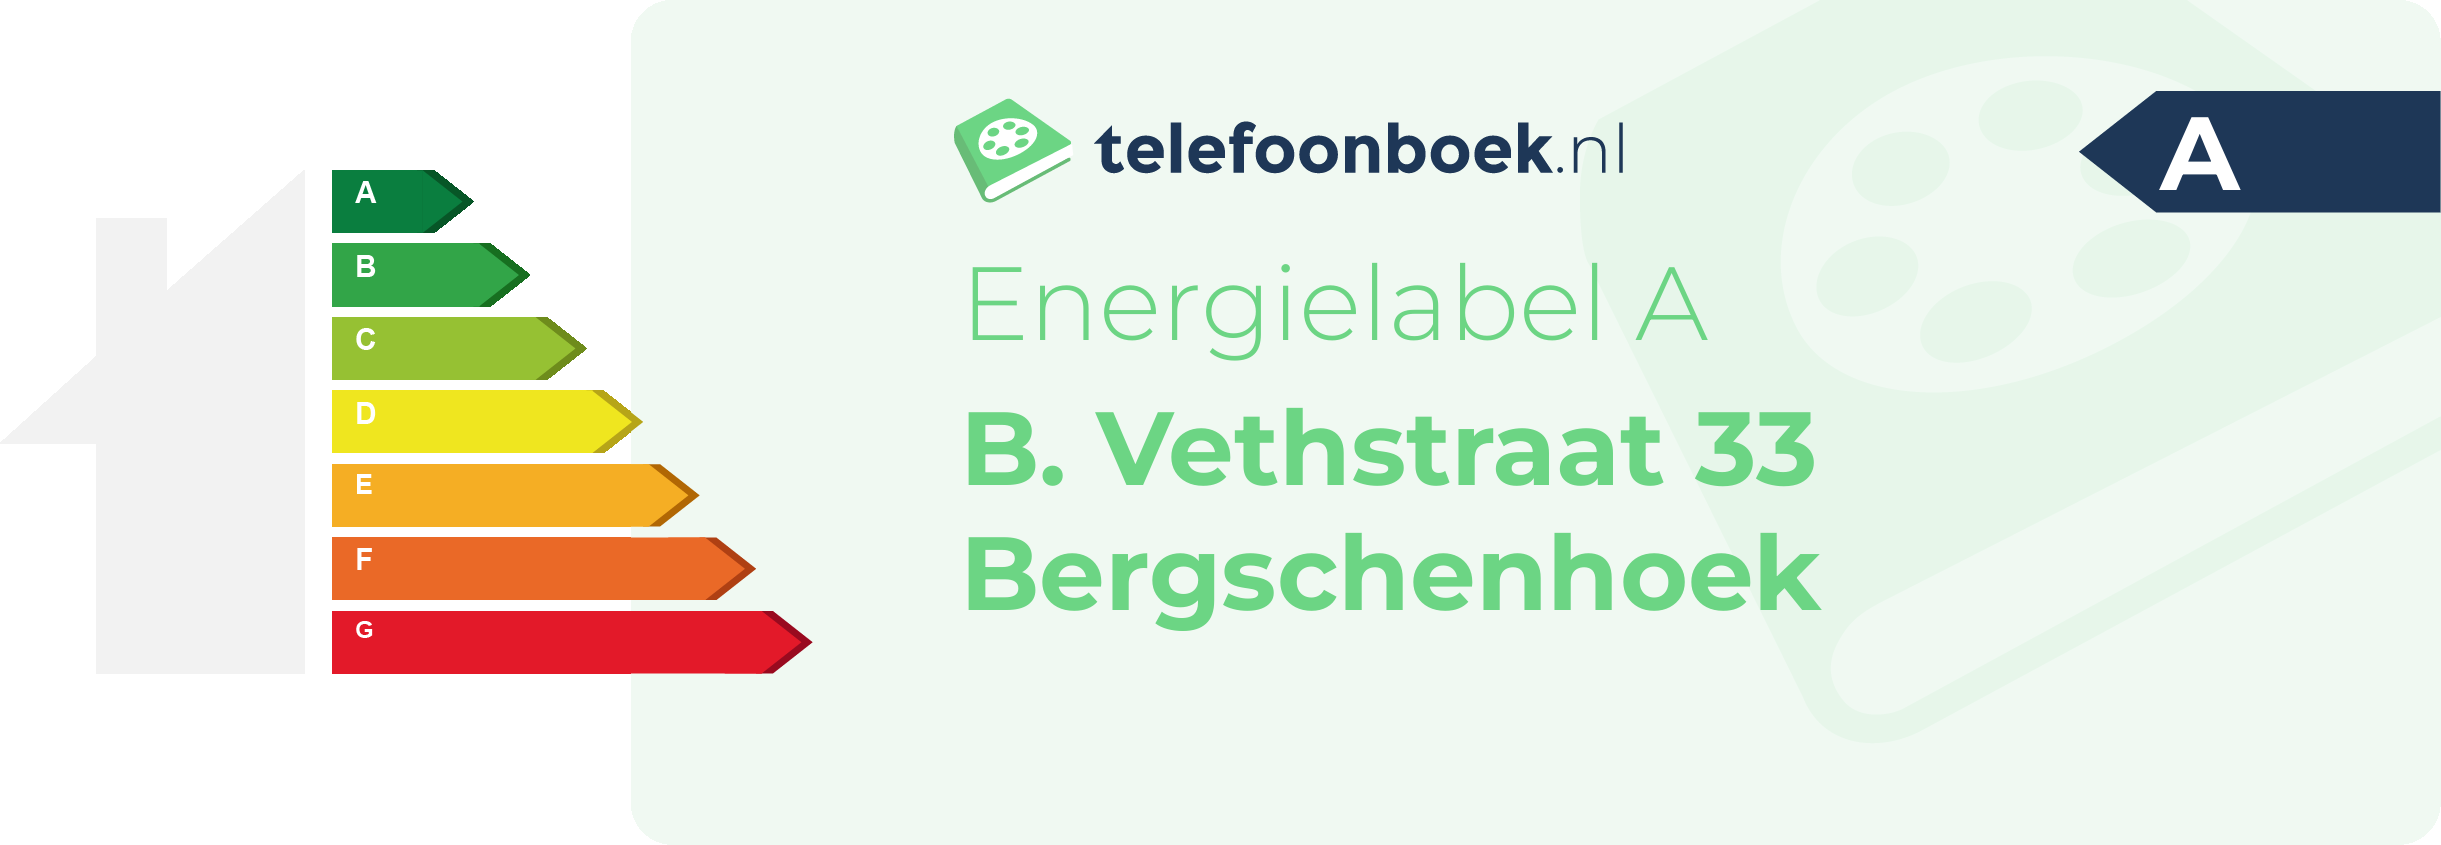 Energielabel B. Vethstraat 33 Bergschenhoek